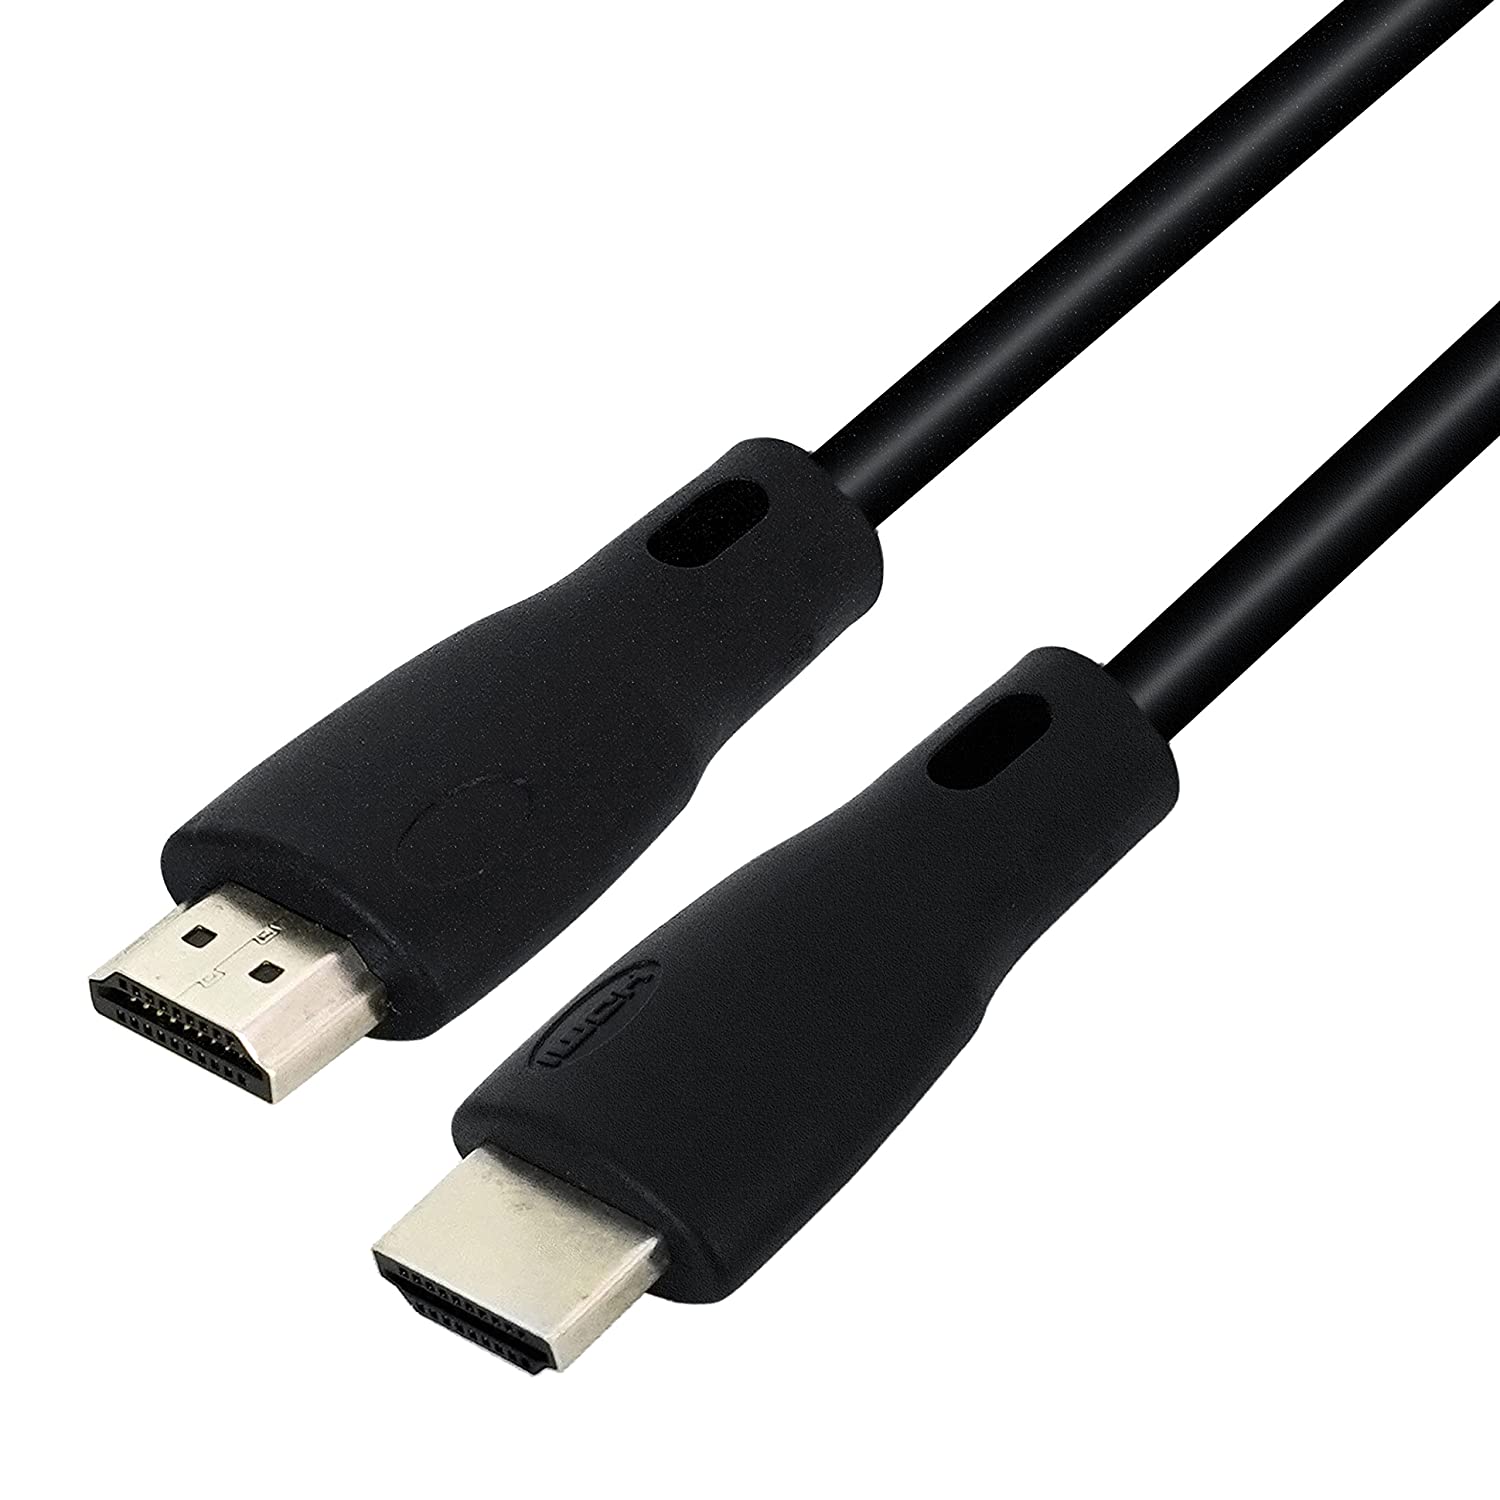 HDMI Cable 1.5mt